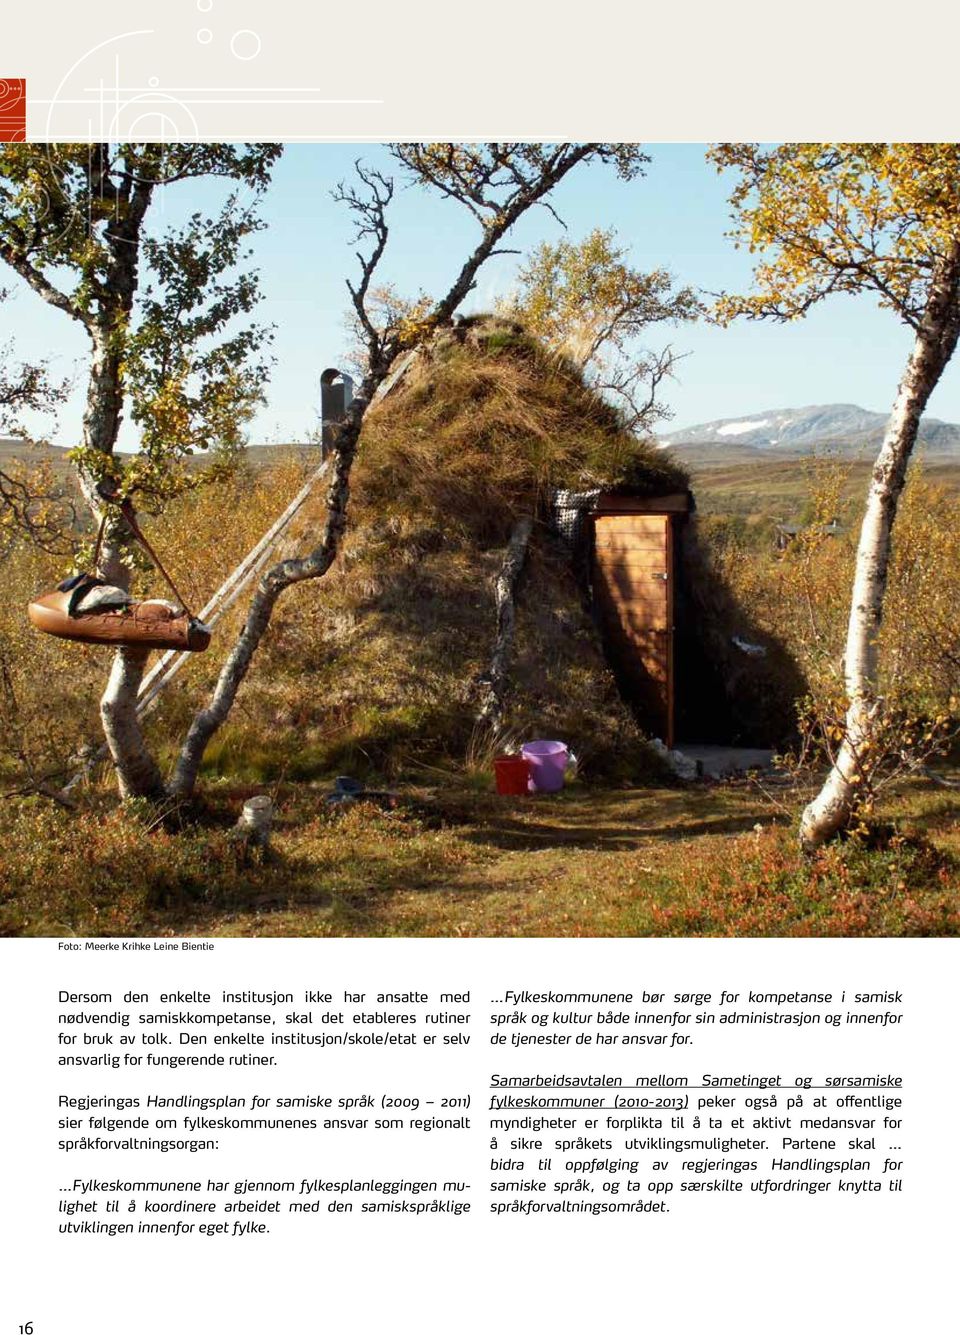 Regjeringas Handlingsplan for samiske språk (2009 2011) sier følgende om fylkeskommunenes ansvar som regionalt språkforvaltningsorgan: Fylkeskommunene har gjennom fylkesplanleggingen mulighet til å